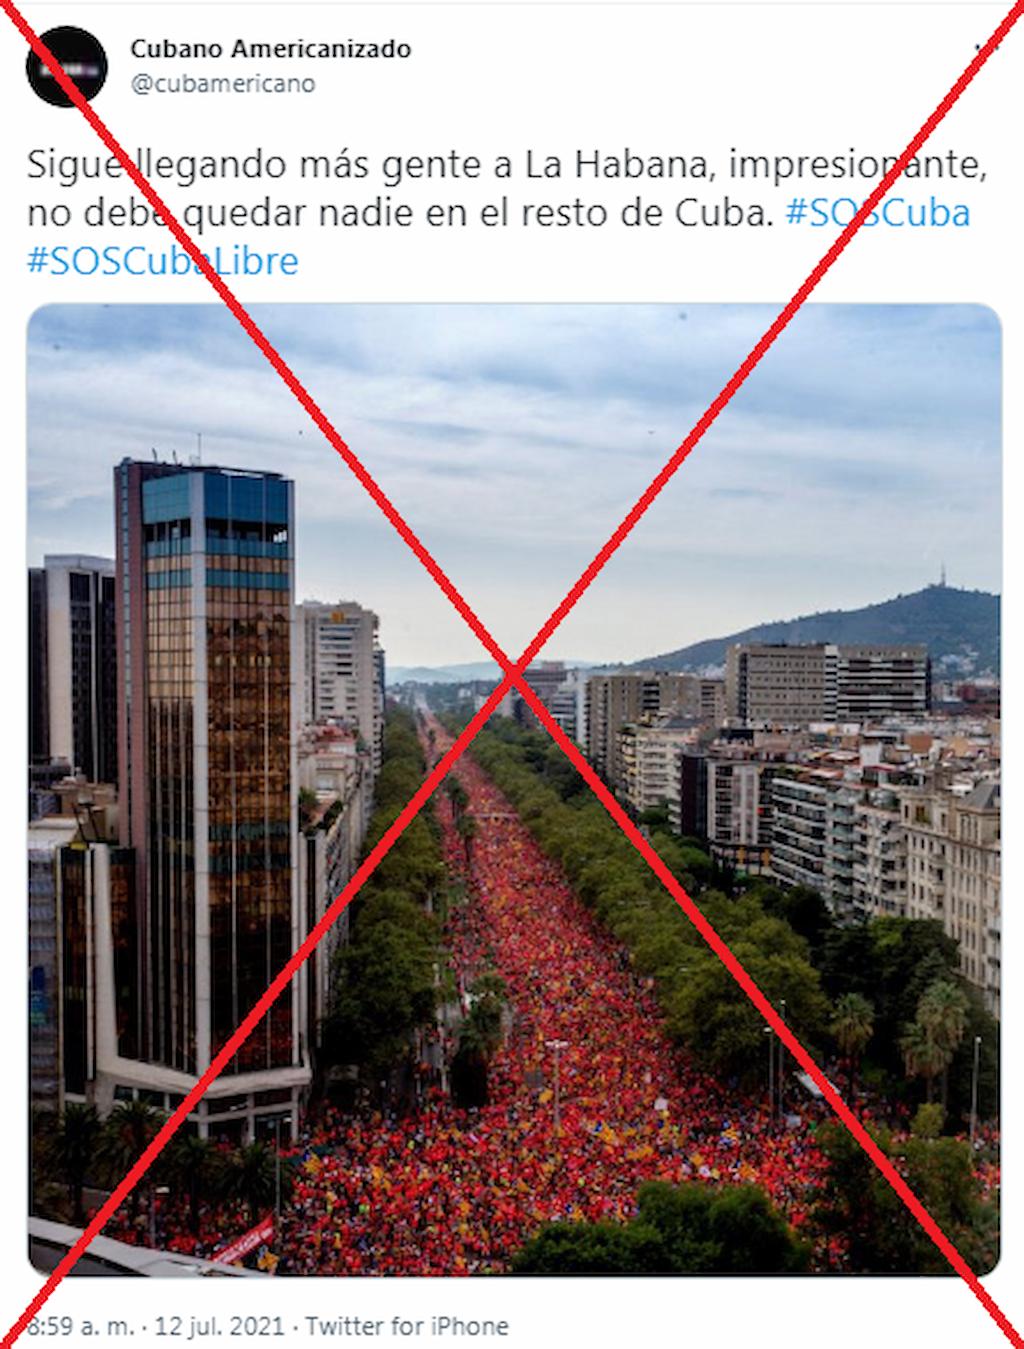 Una imagen manipulada sobre las protestas en Cuba.